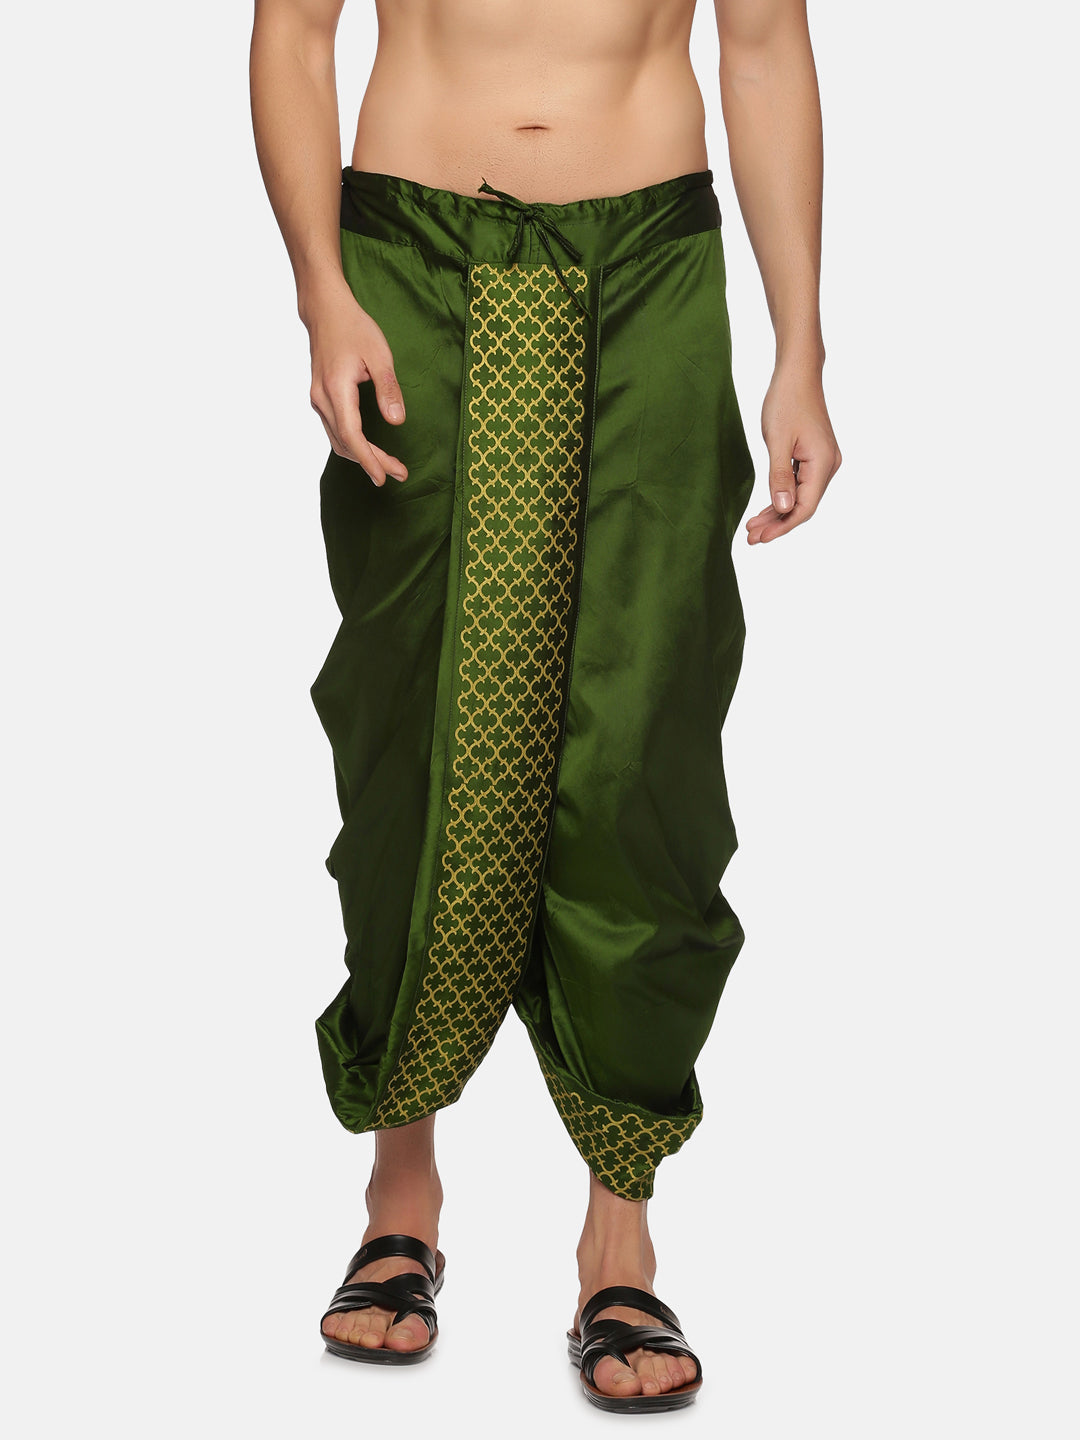 Womens Casual Harem Pants Ladies Cotton Linen Summer Baggy Trousers Plus  Size | eBay